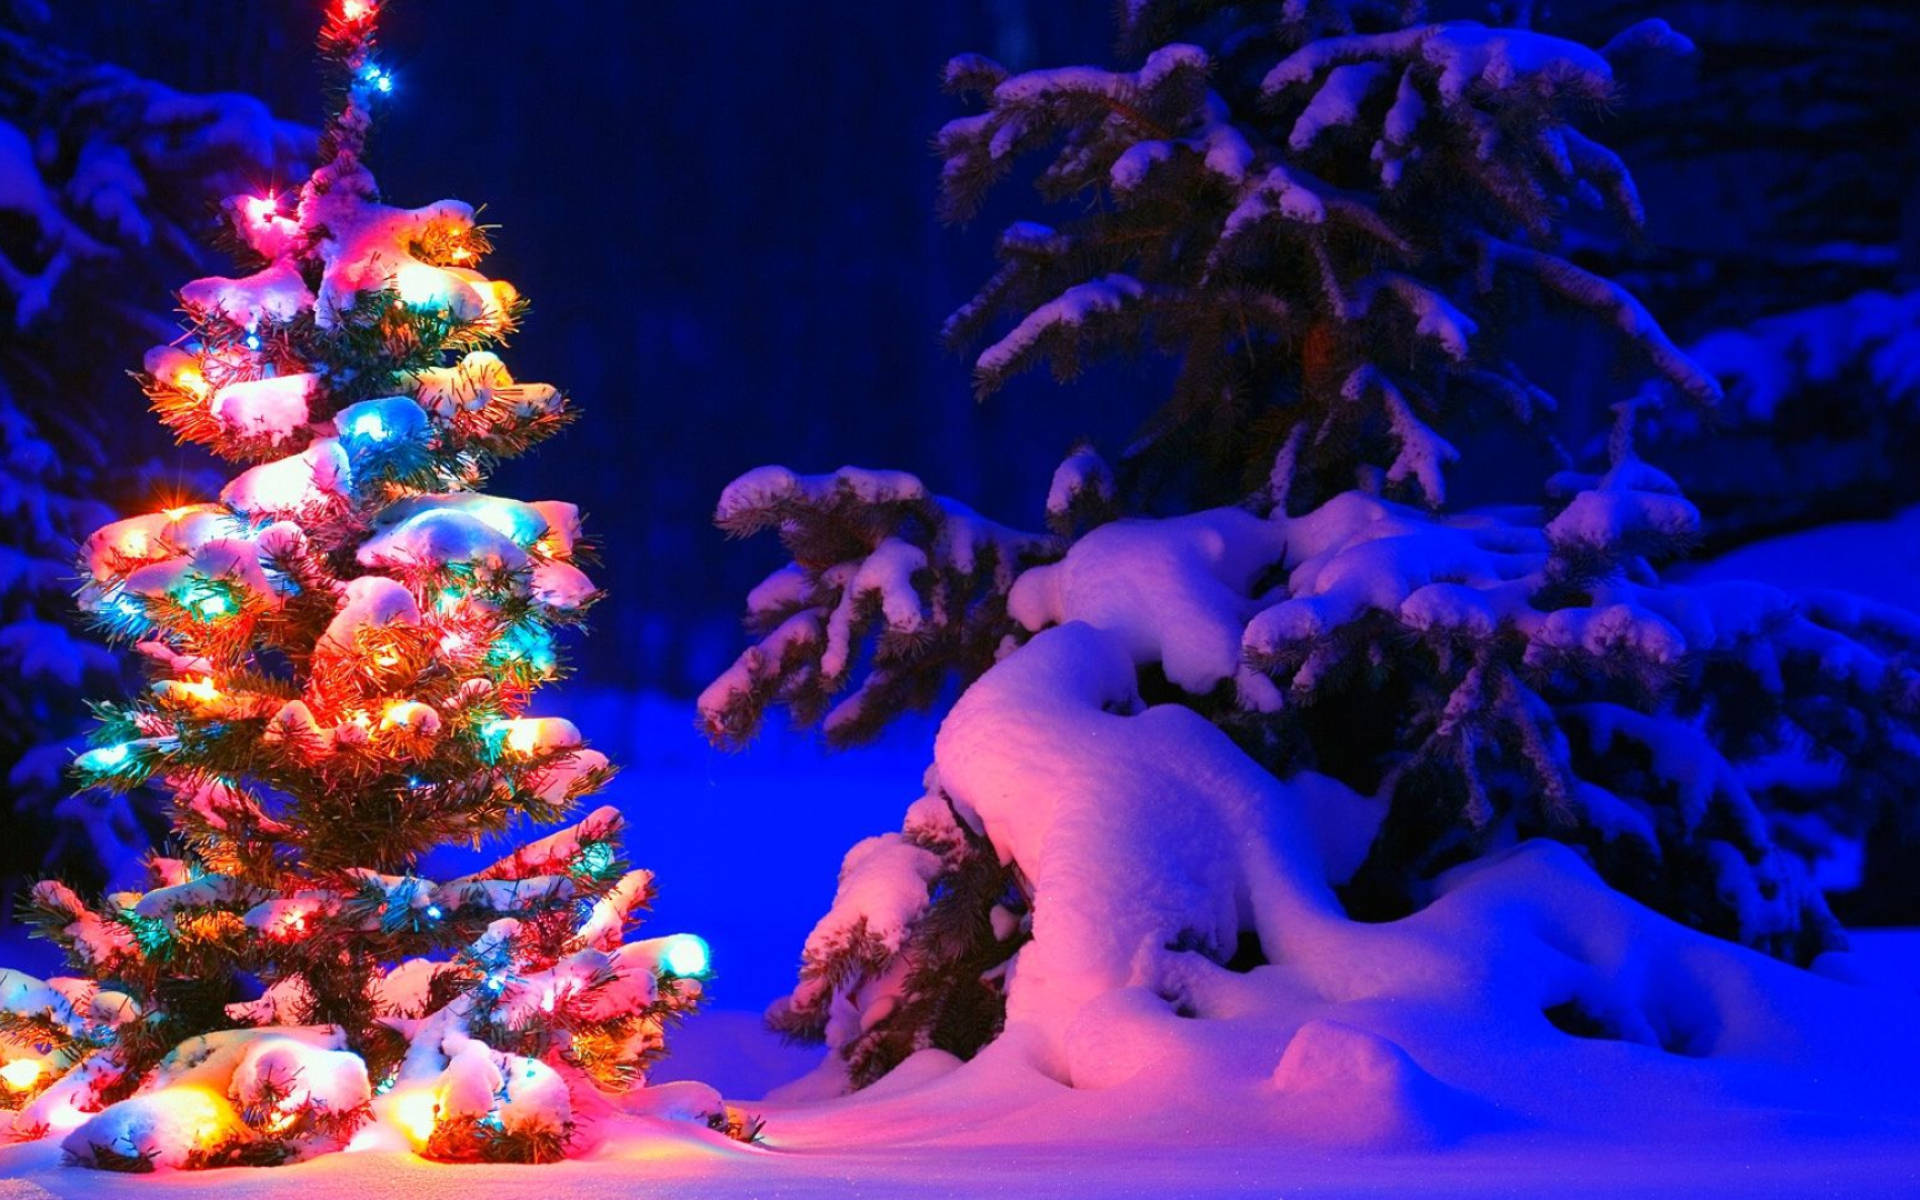 Juletræ i sneen med lys Wallpaper